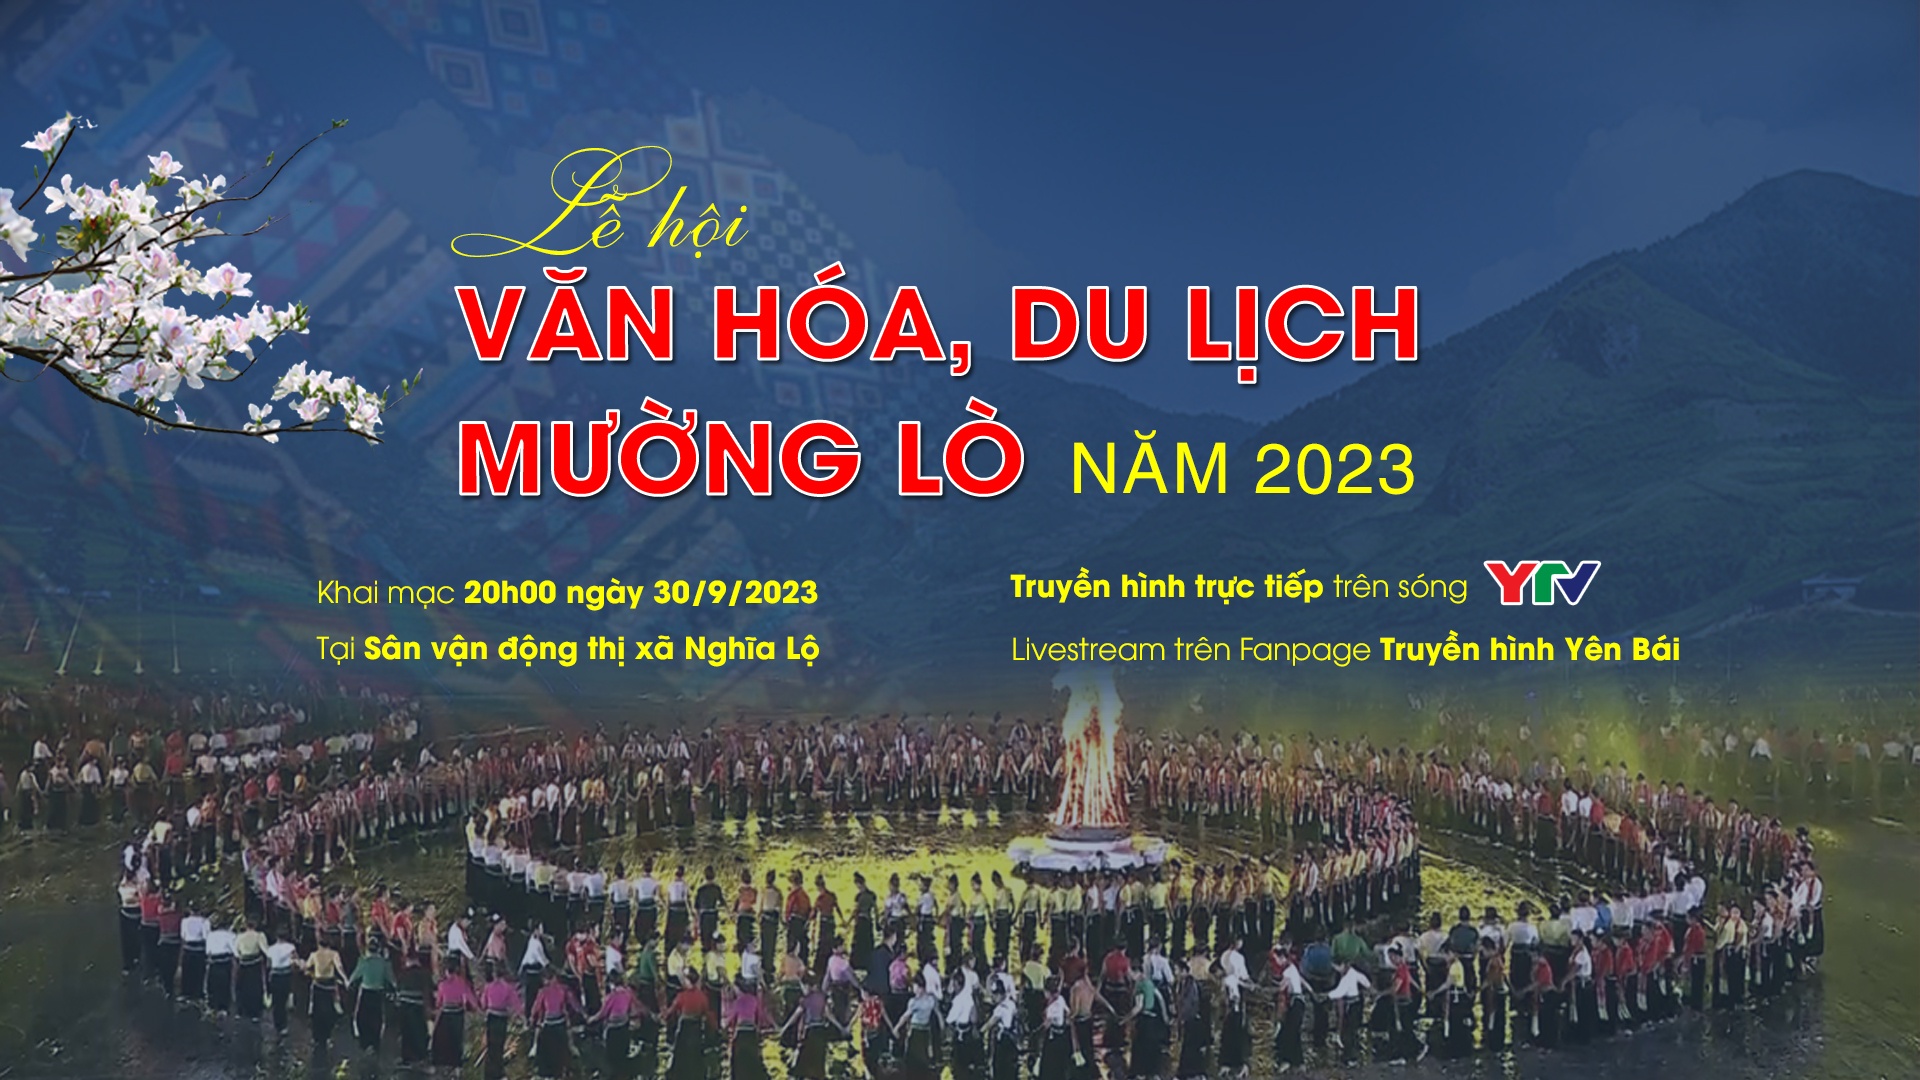 Yên Bái chào đón du khách tới Lễ hội Văn hóa, du lịch Mường Lò năm 2023